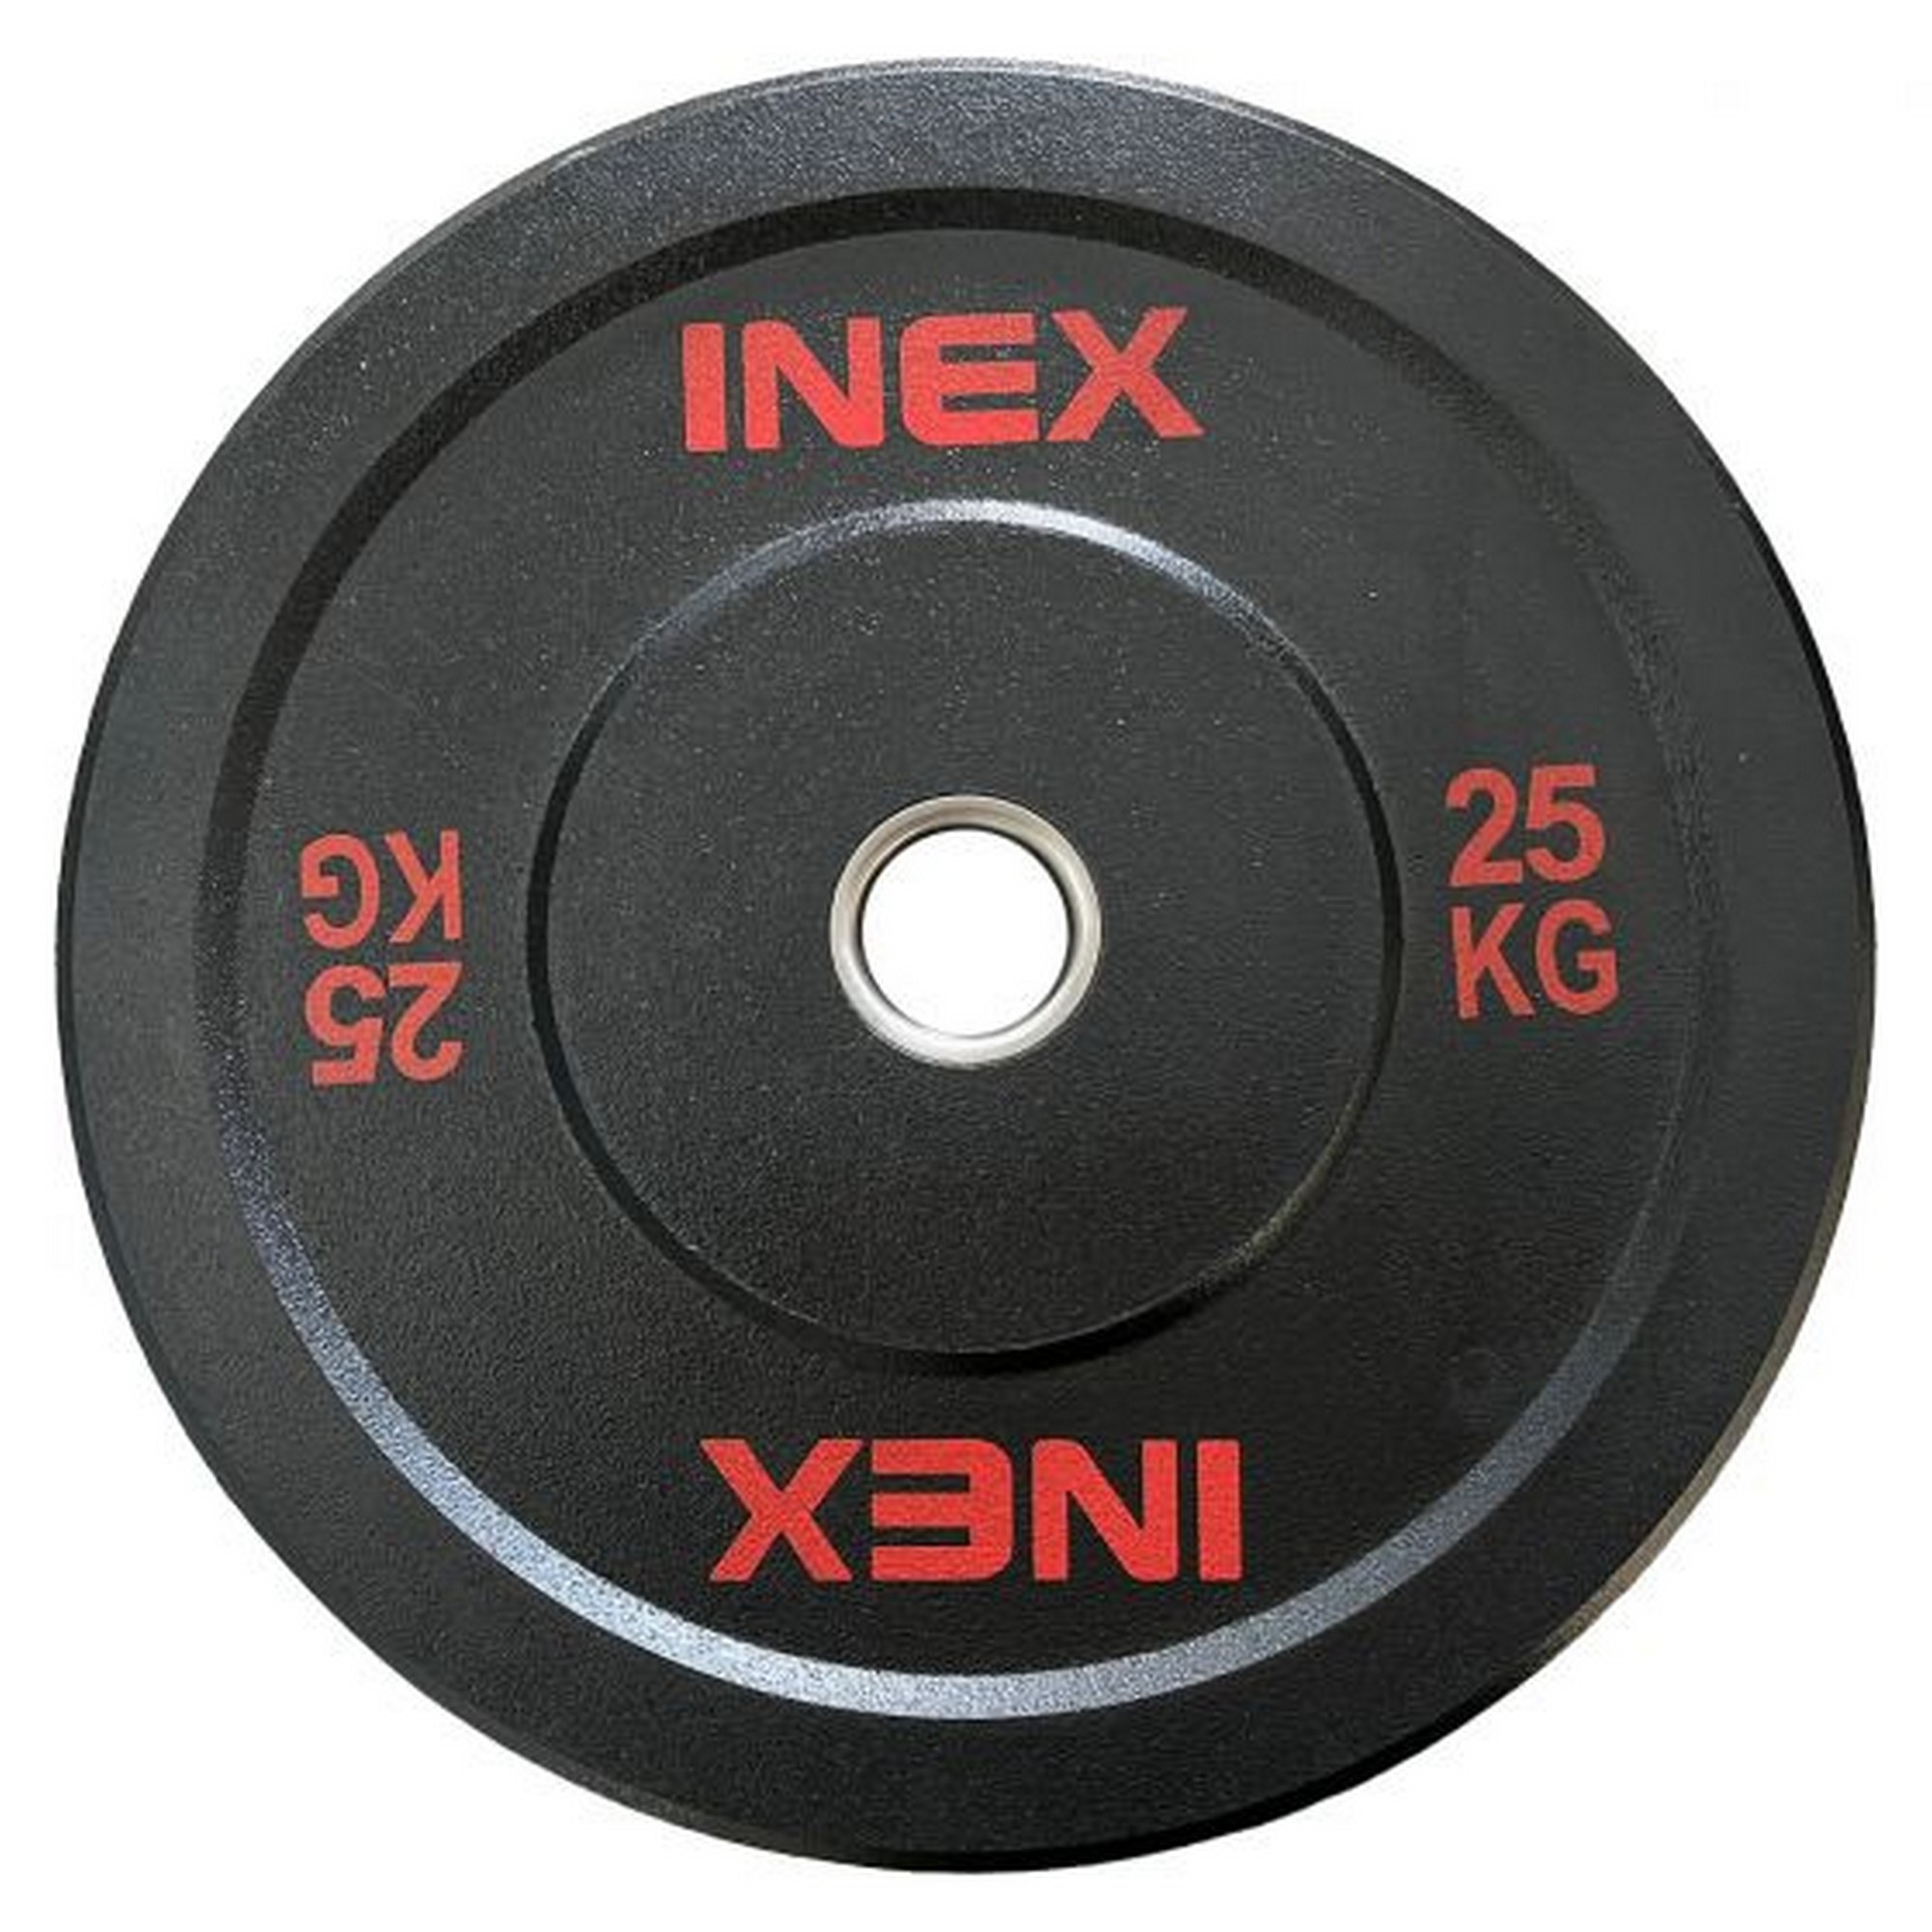 Бампированный диск 25кг Inex Hi-Temp TF-P4001-25 черный-красный - фото 1